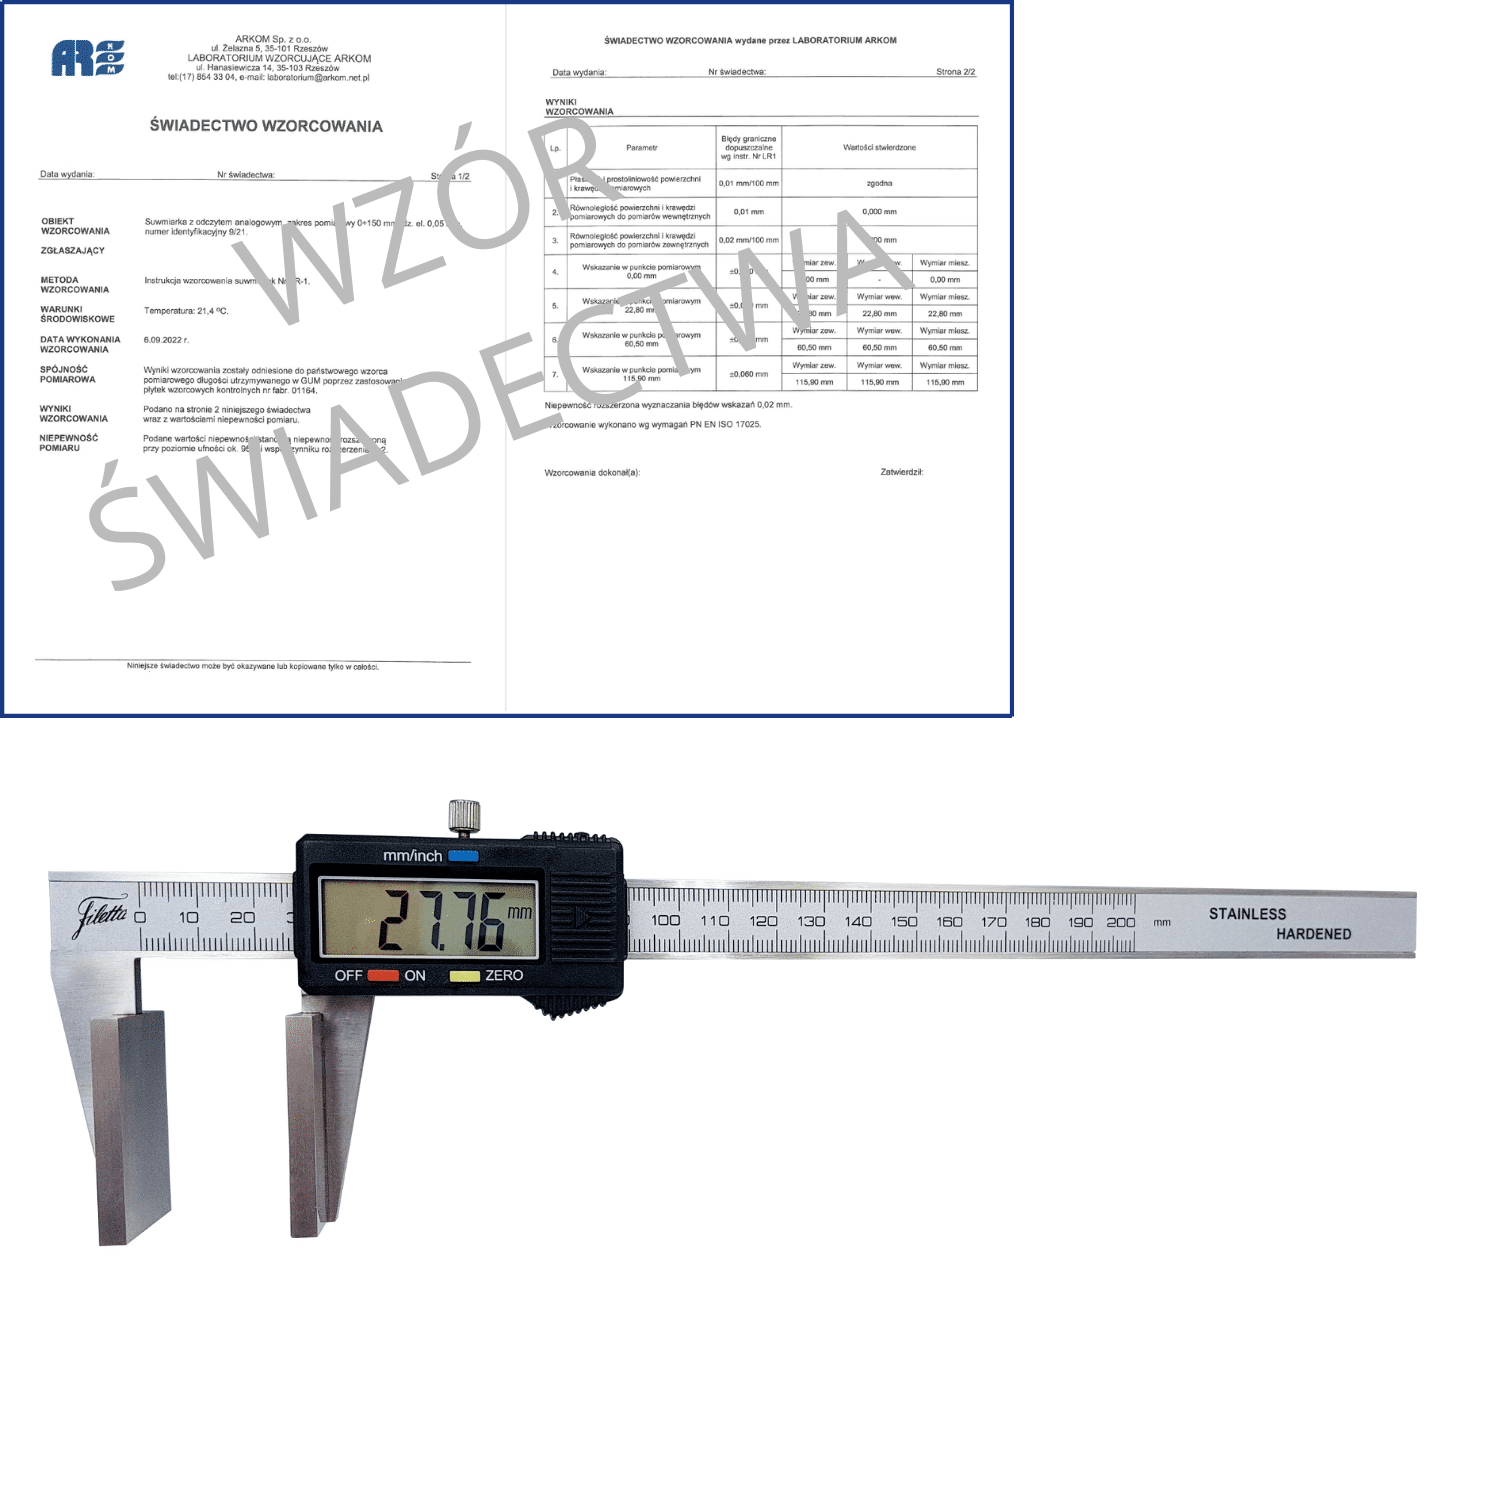 SCHUT suwmiarka elektroniczna 200/0.01 mm do pomiaru grubości lin + świadectwo wzorcowania 910.167 WZORC